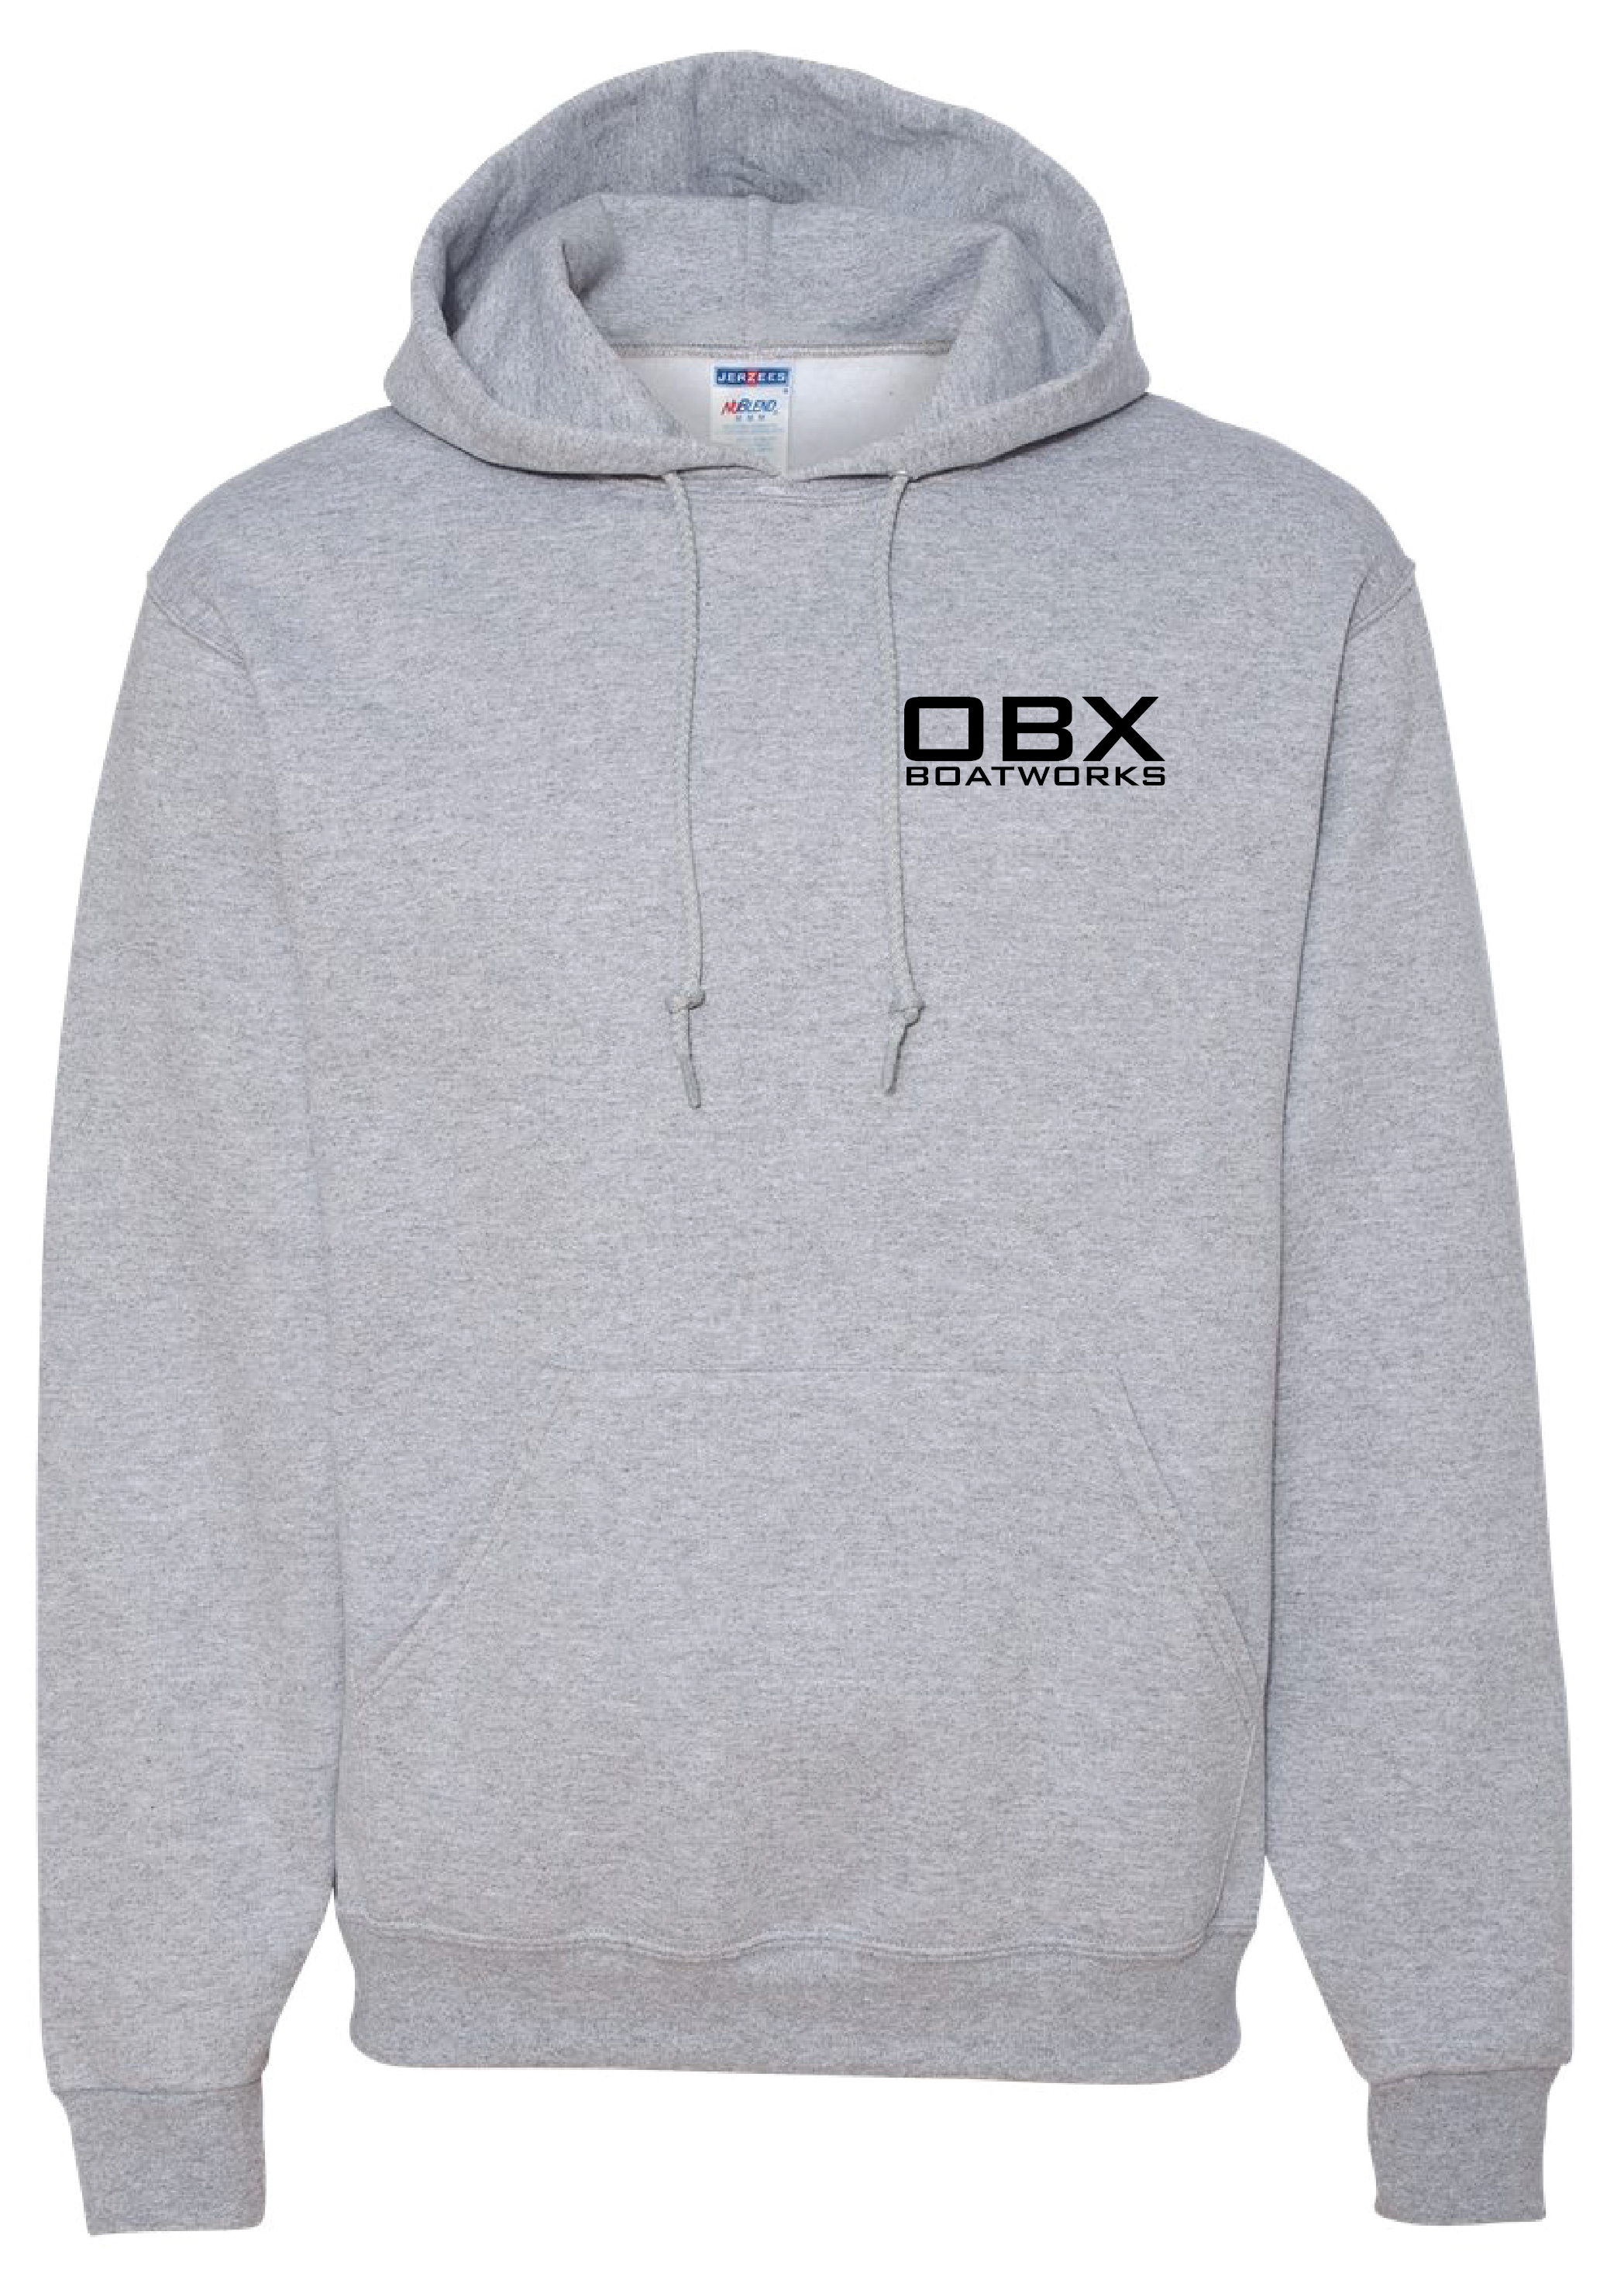 OBX Boatworks Sweatshirt Line Drawing - Grey